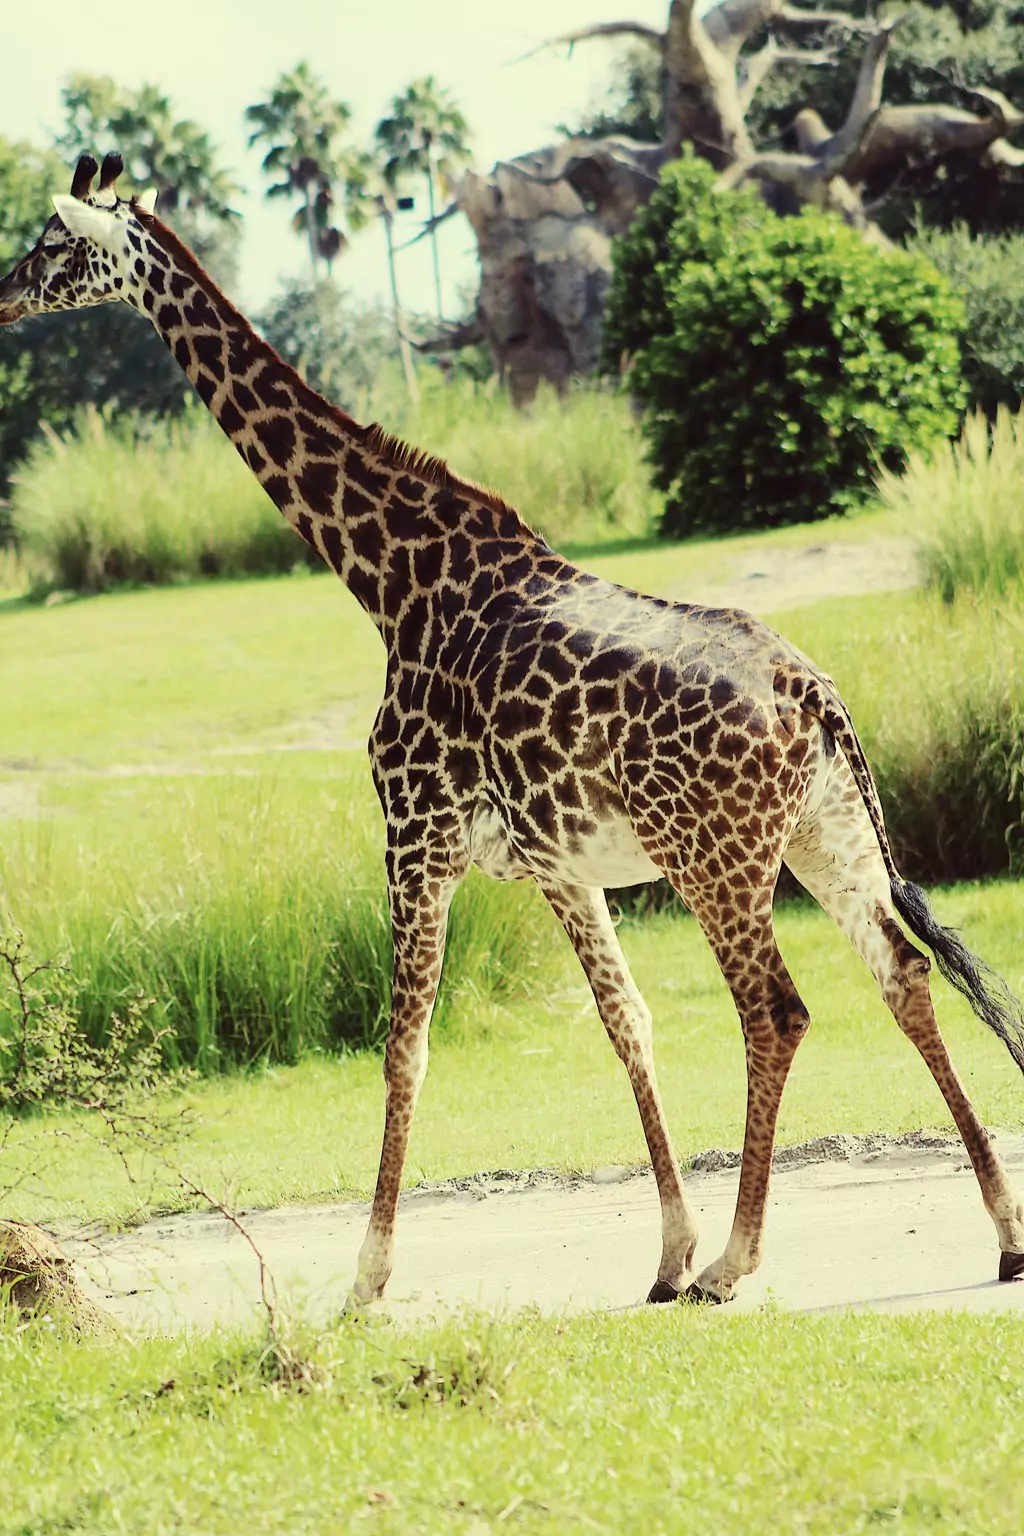 Giraffes in the jungle